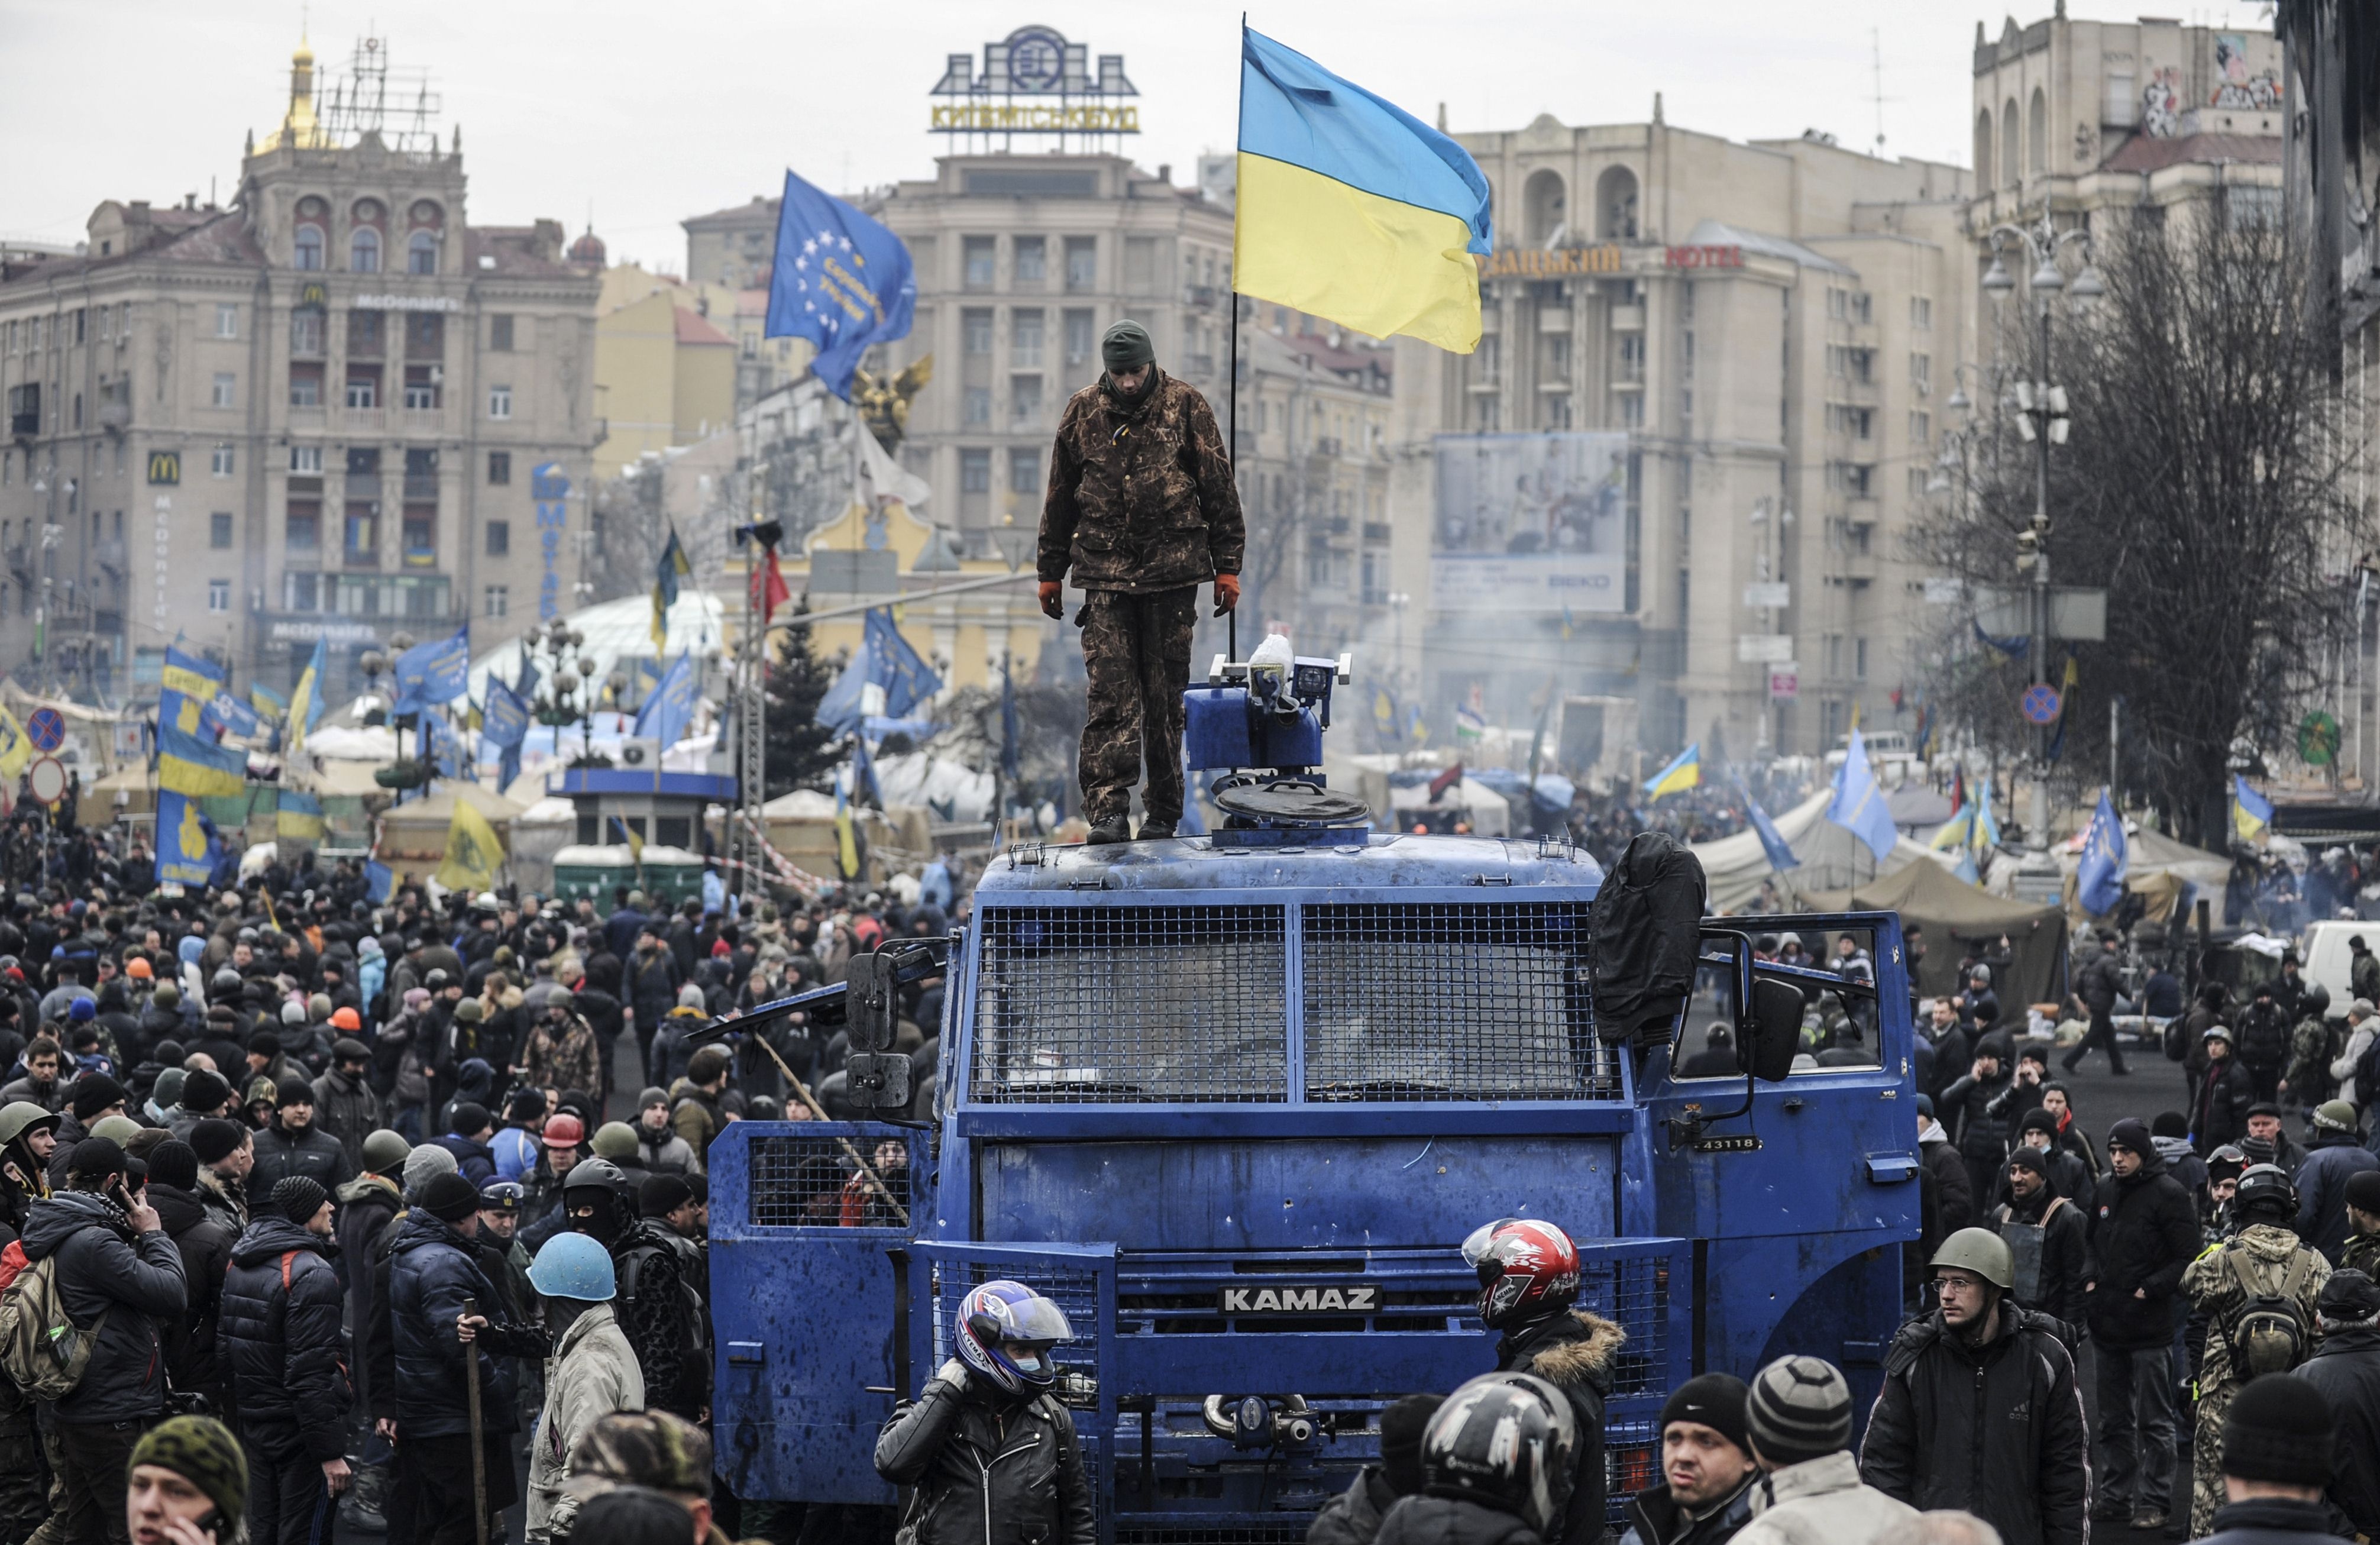 Адепты Майдана прозрели, увидев реального врага украинцев